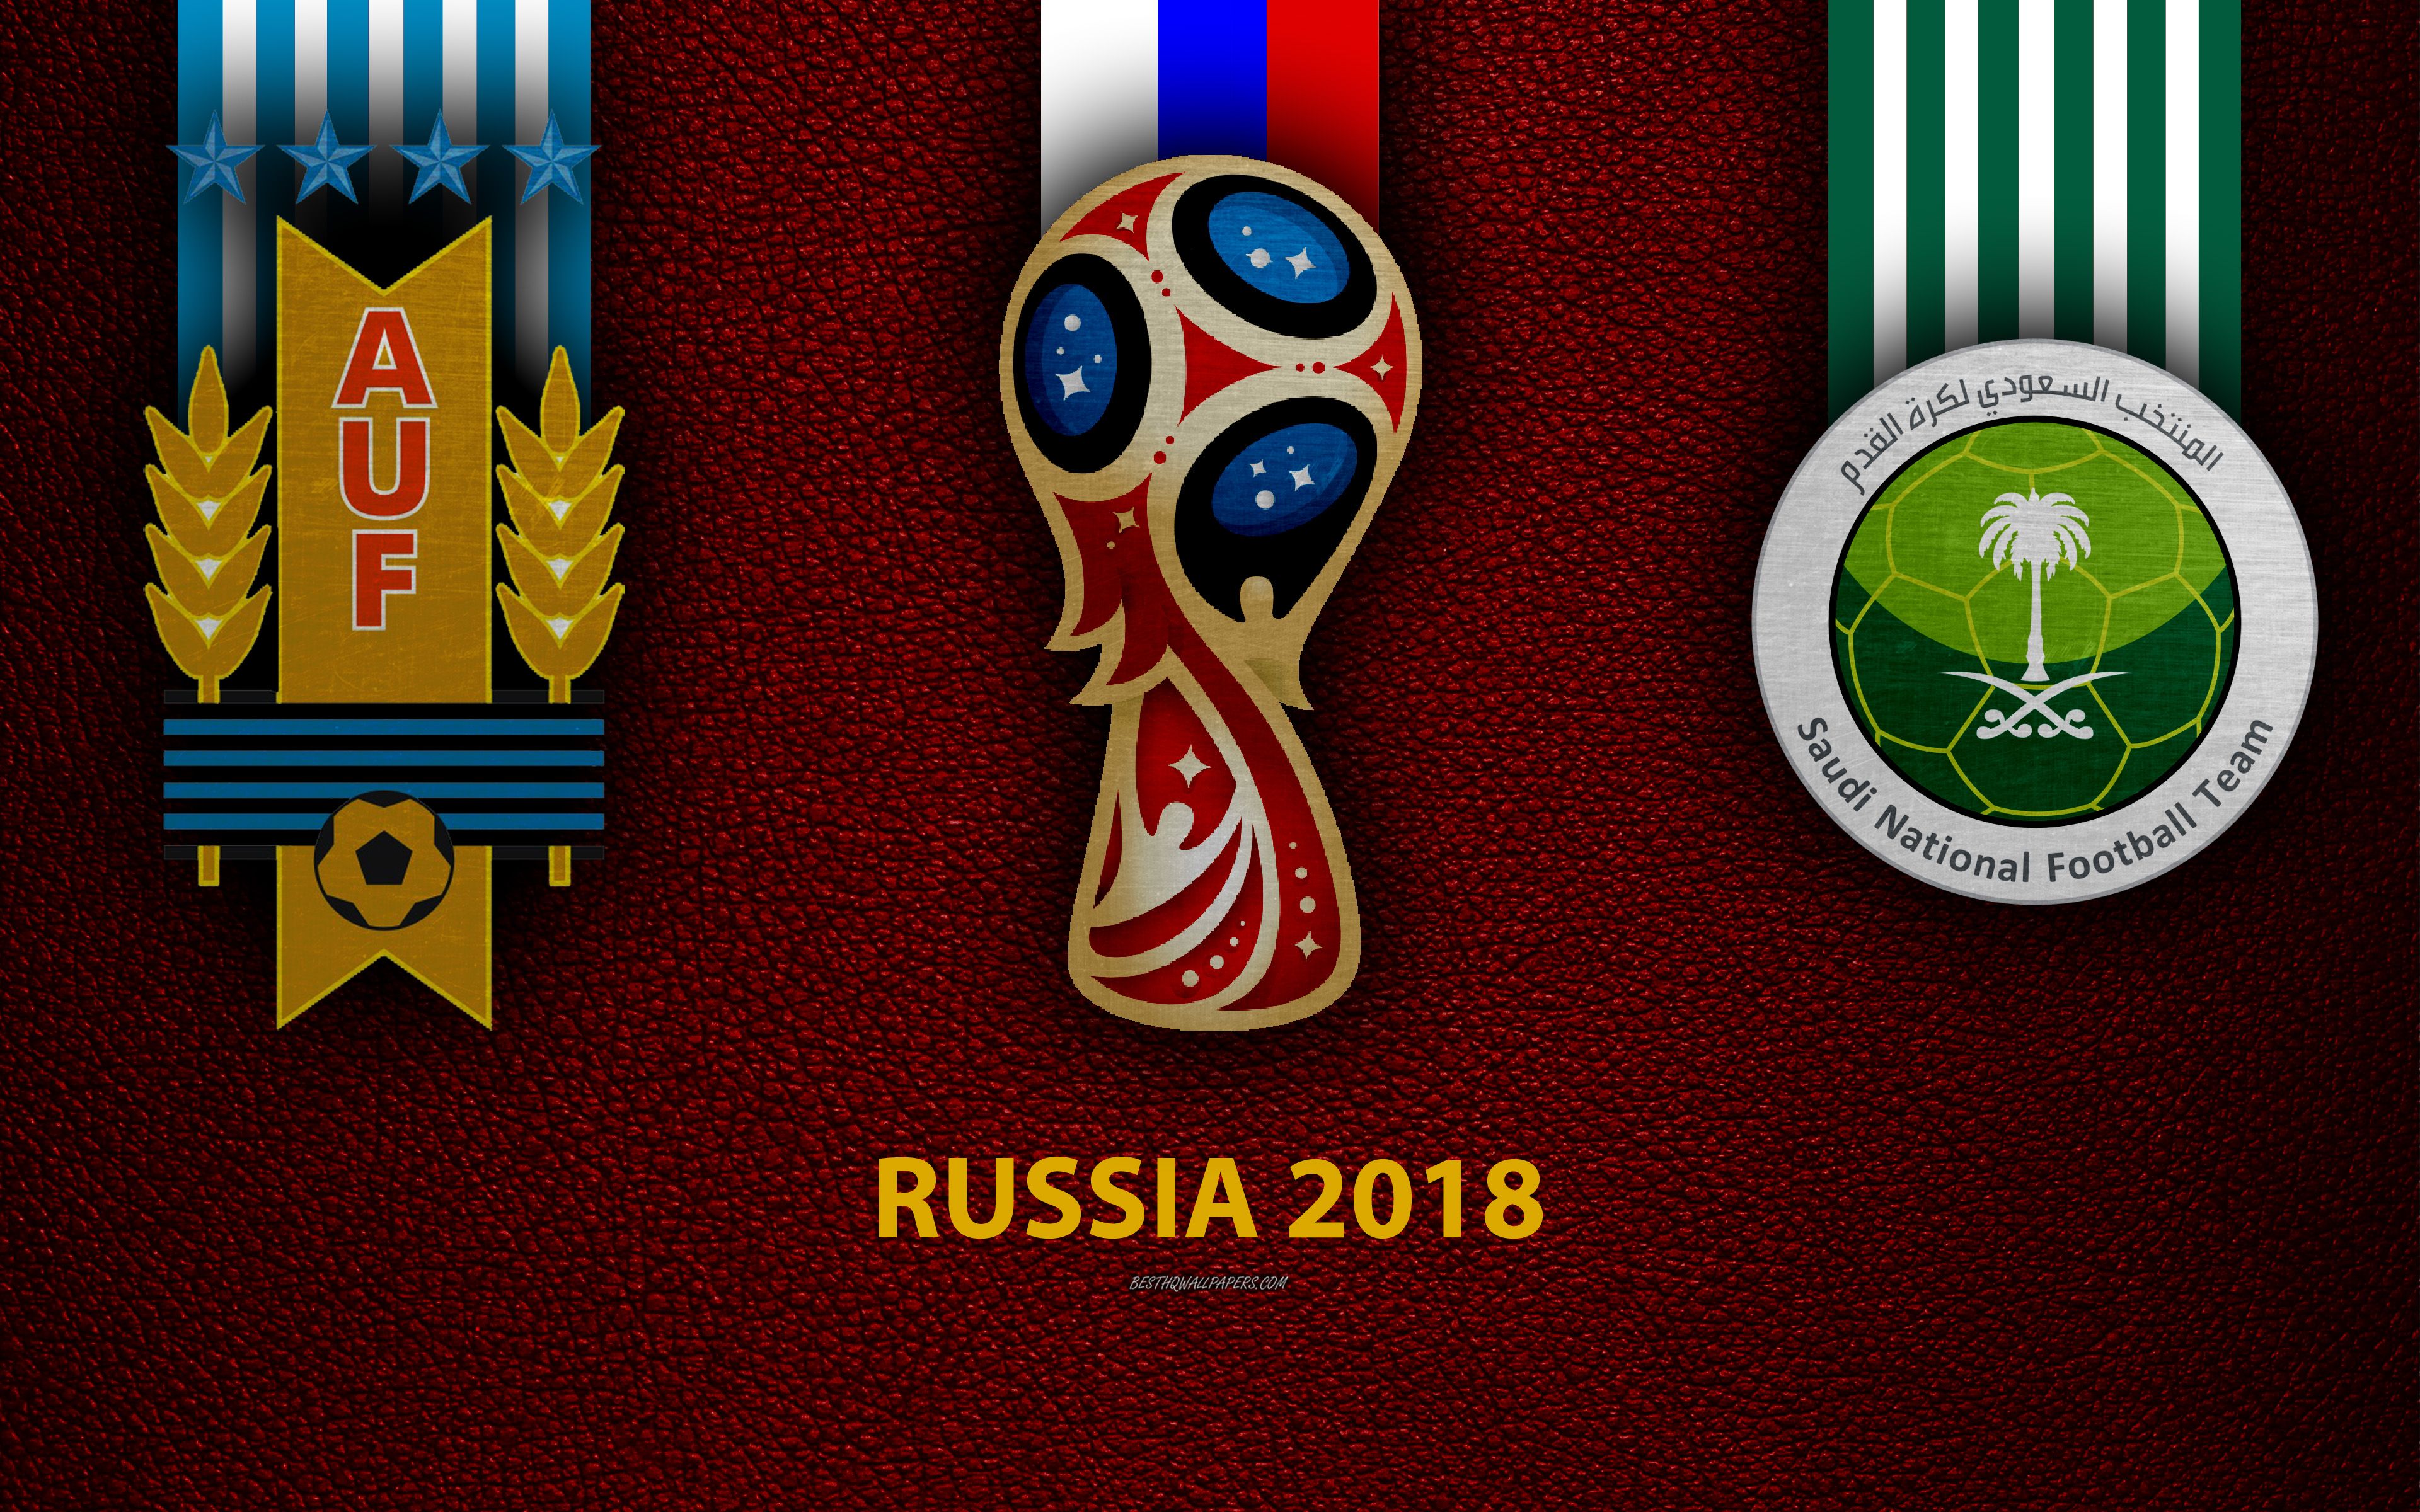 Download wallpaper Uruguay vs Saudi Arabia, 4k, football, logos